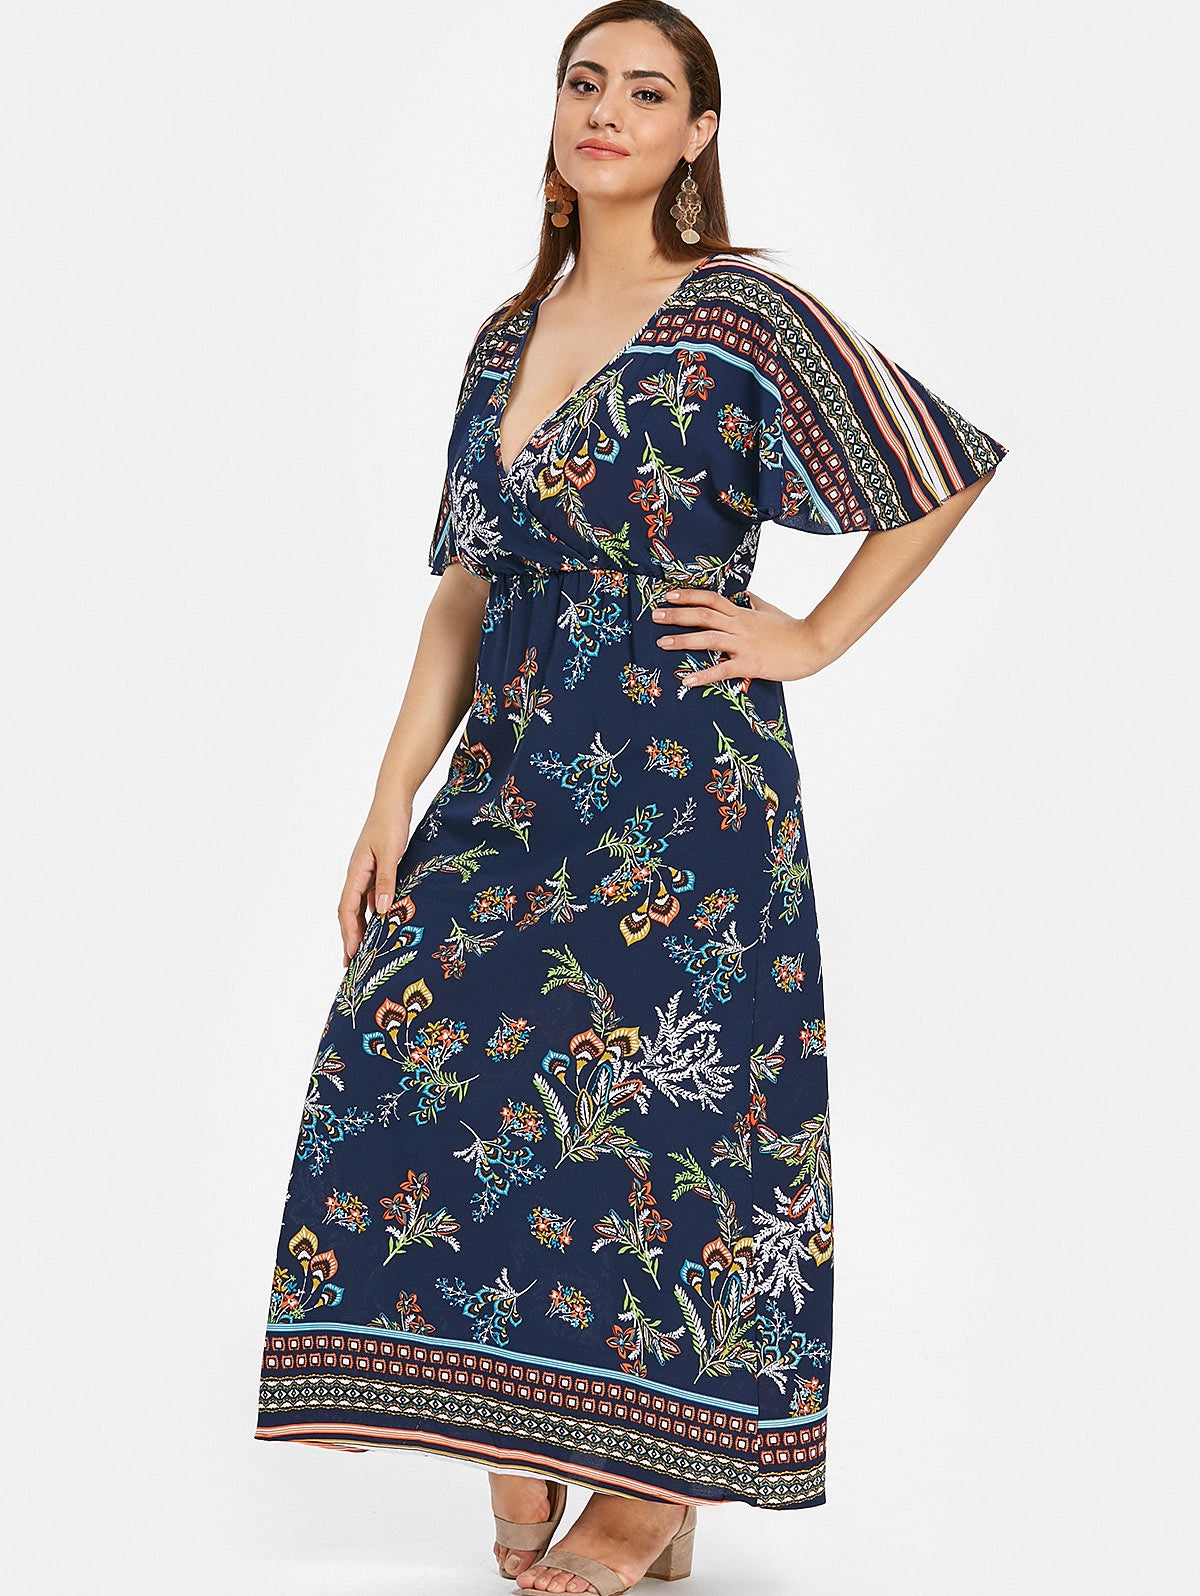 Plus Size Floral Print Maxi Surplice Dress - DromedarShop.com Online Boutique